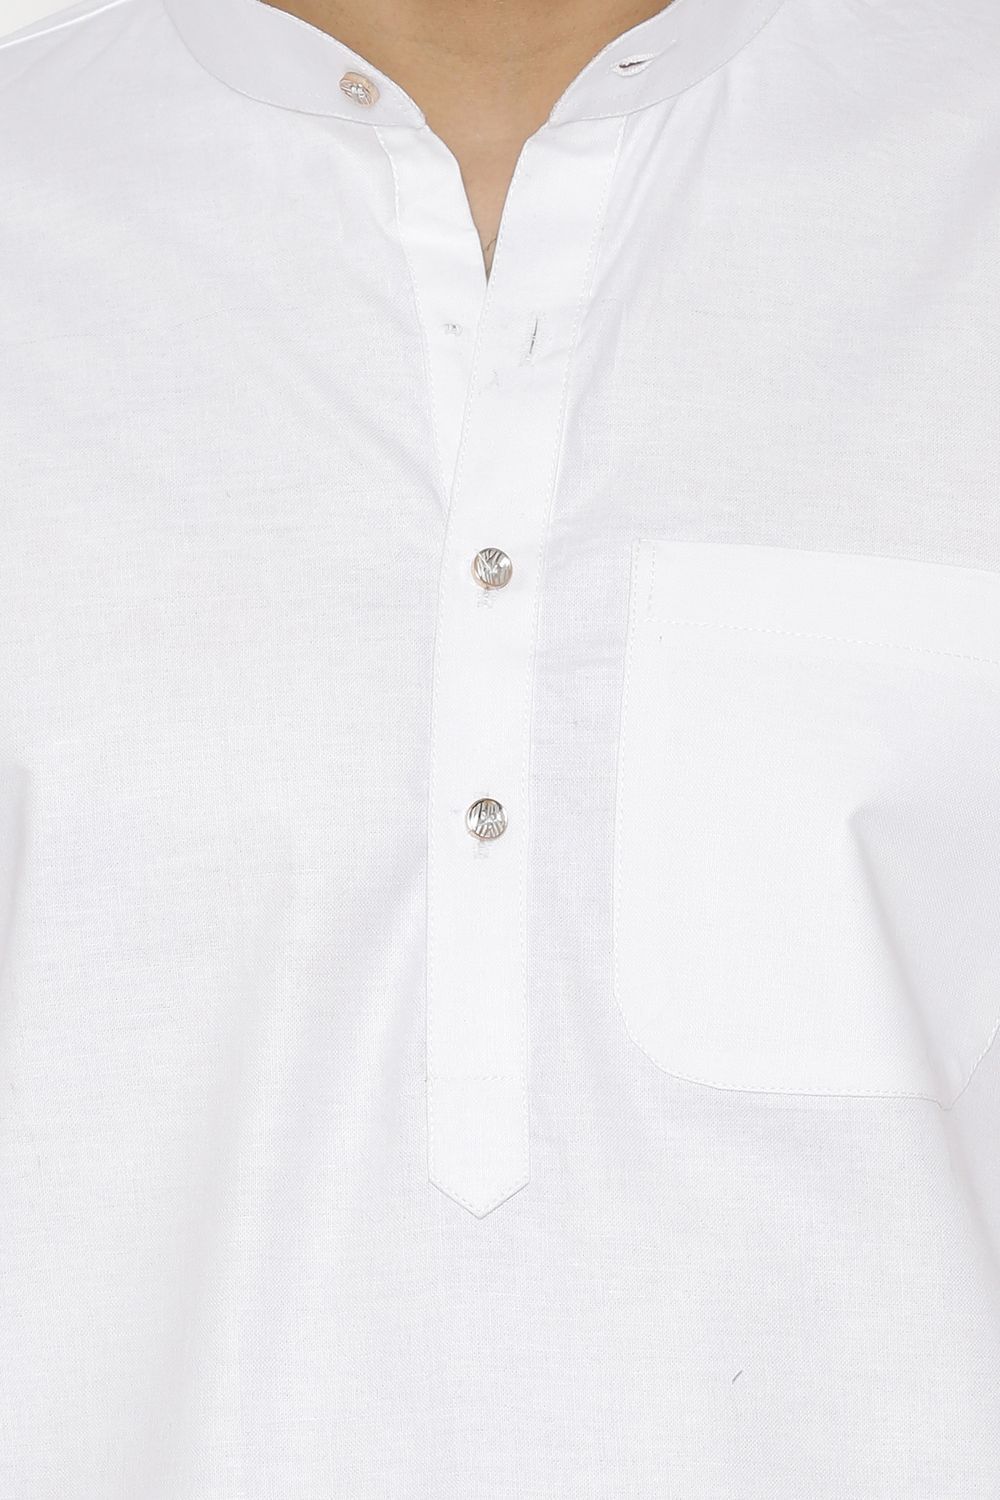 100% Cotton  White Kurta Pyjama